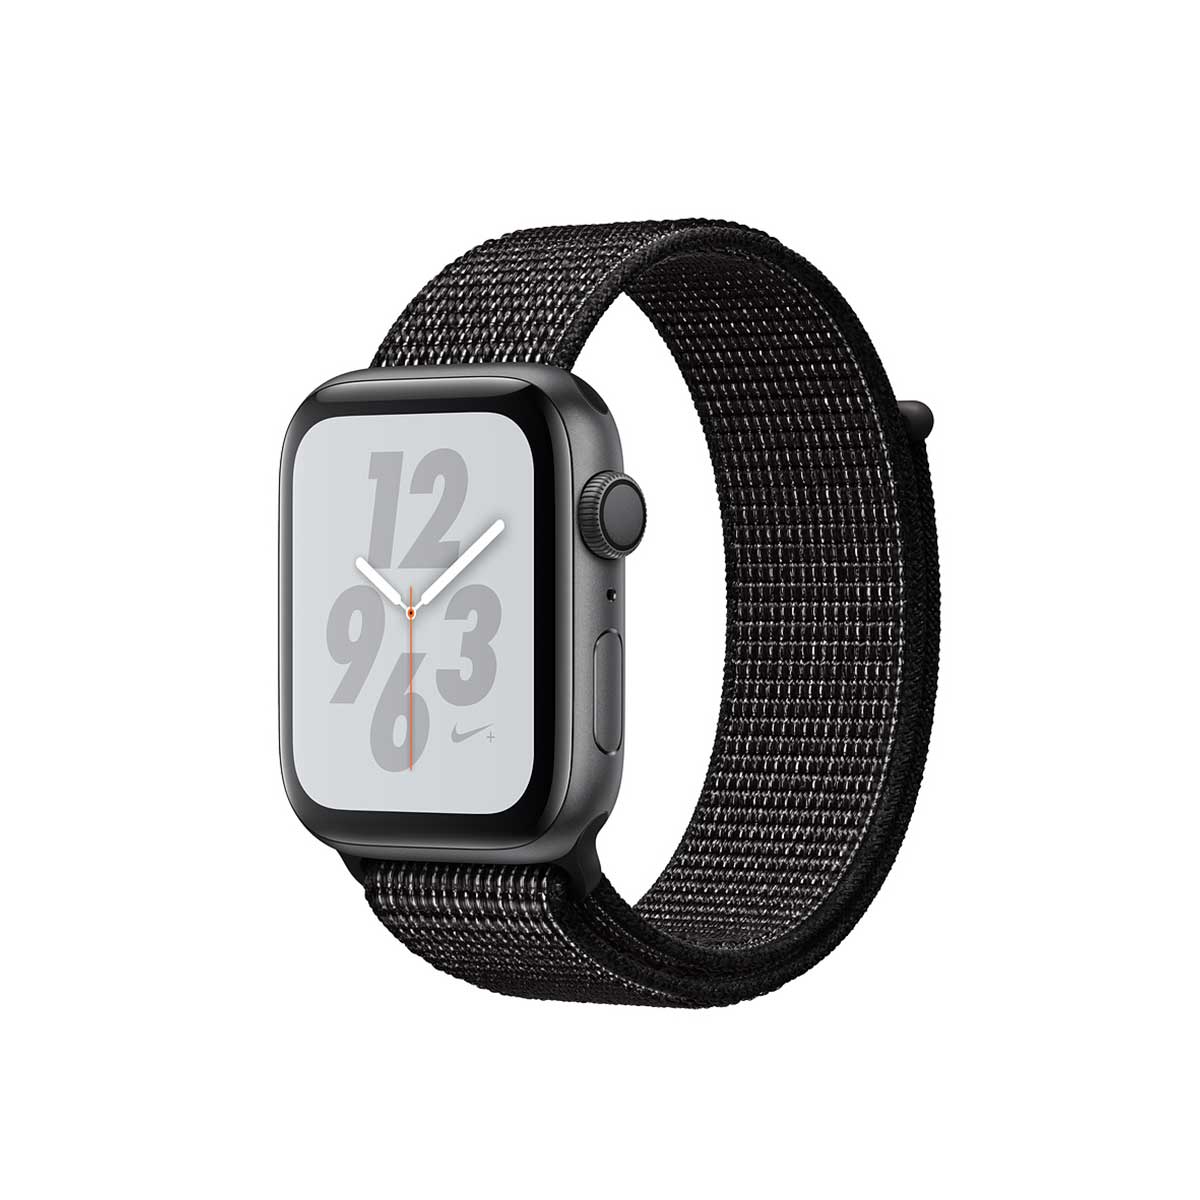 Apple Watch Nike+ Series 4 GPS, 44mm Space Gray Aluminum Case with Black Nike Sport Loop